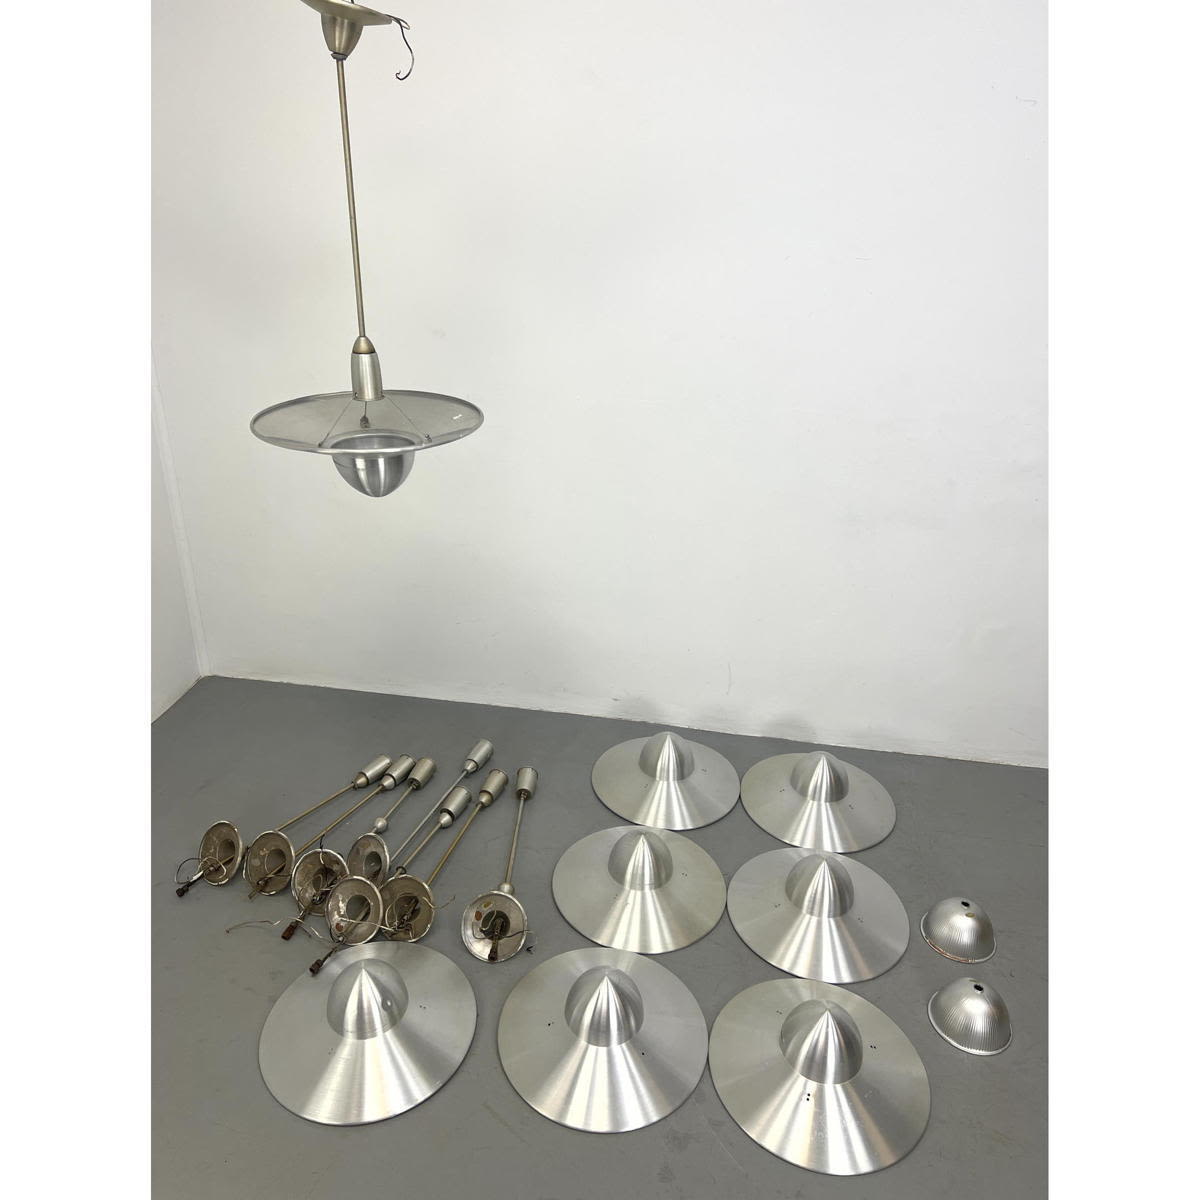 8 spun aluminum saucer lamps Space 2baf02